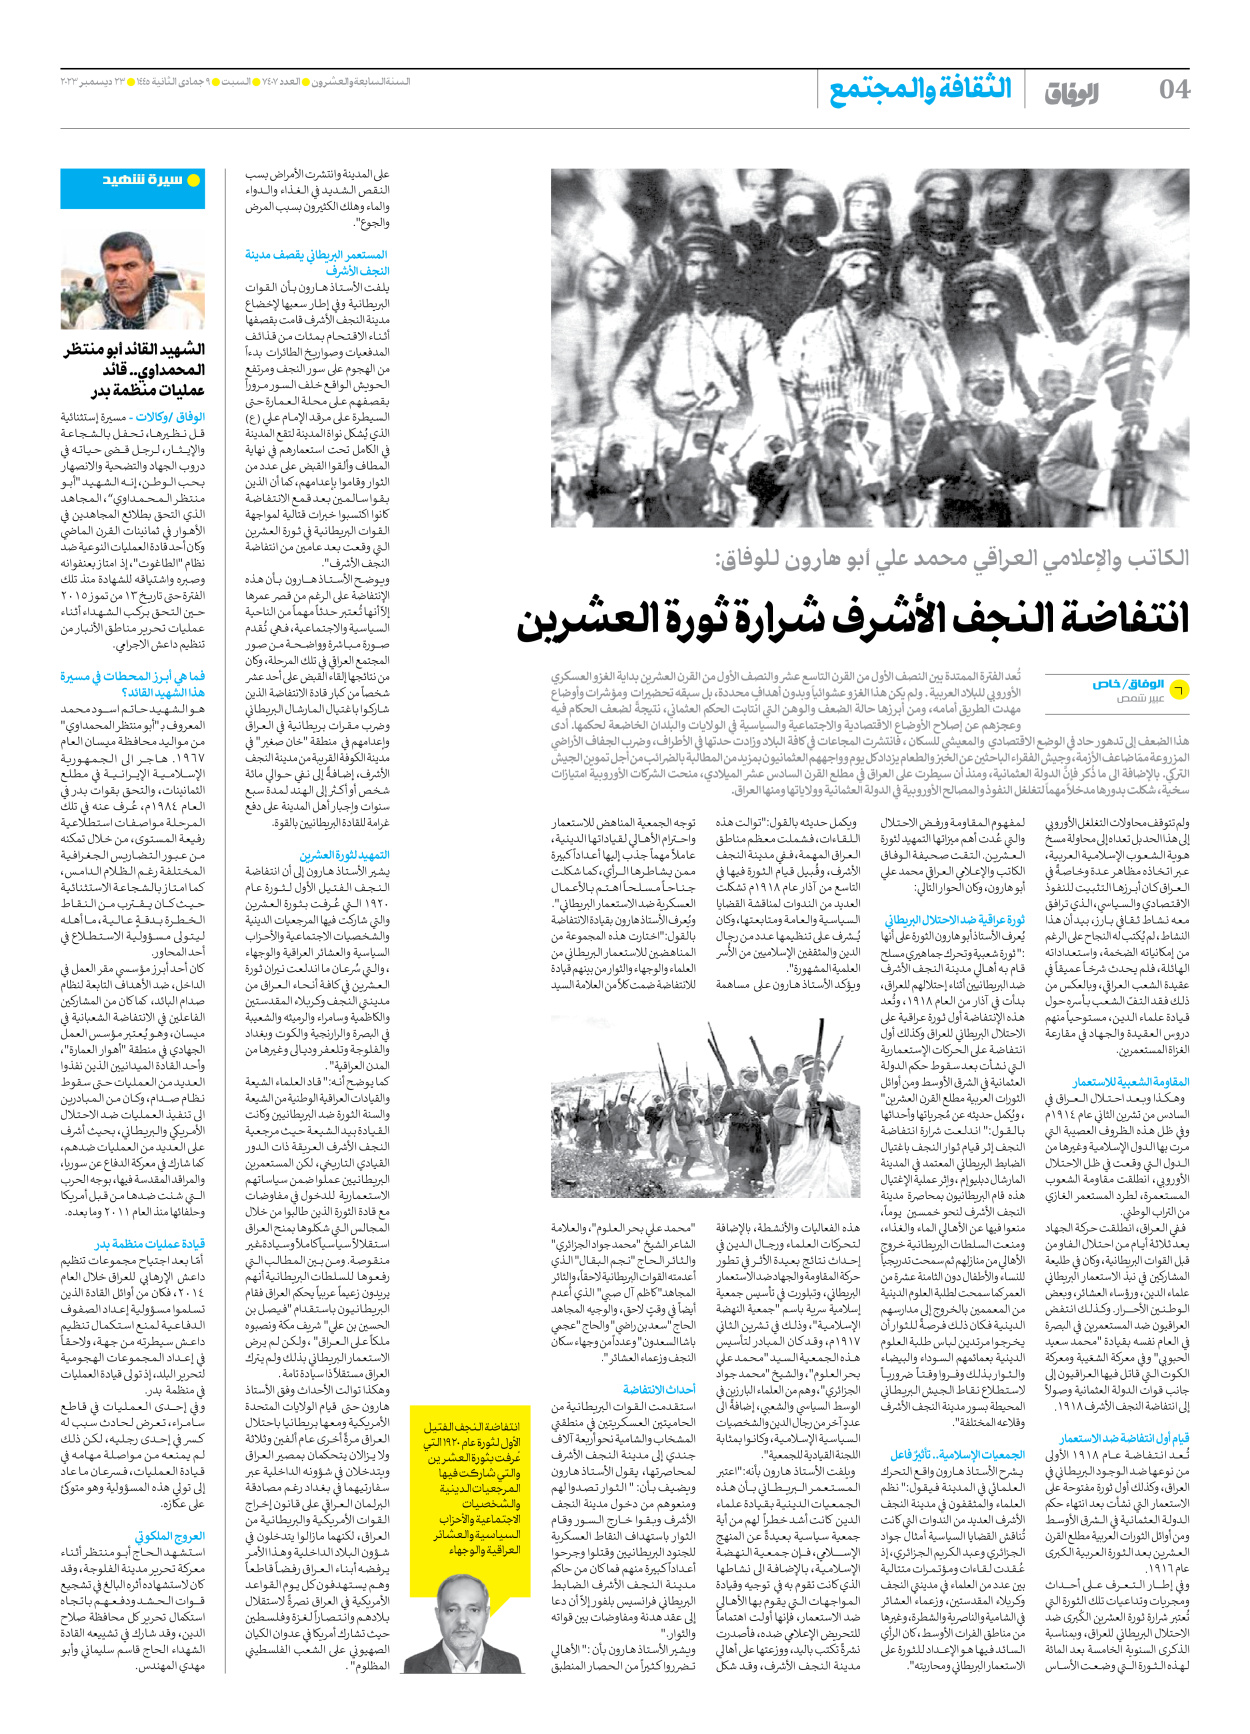 صحیفة ایران الدولیة الوفاق - العدد سبعة آلاف وأربعمائة وسبعة - ٢٣ ديسمبر ٢٠٢٣ - الصفحة ٤